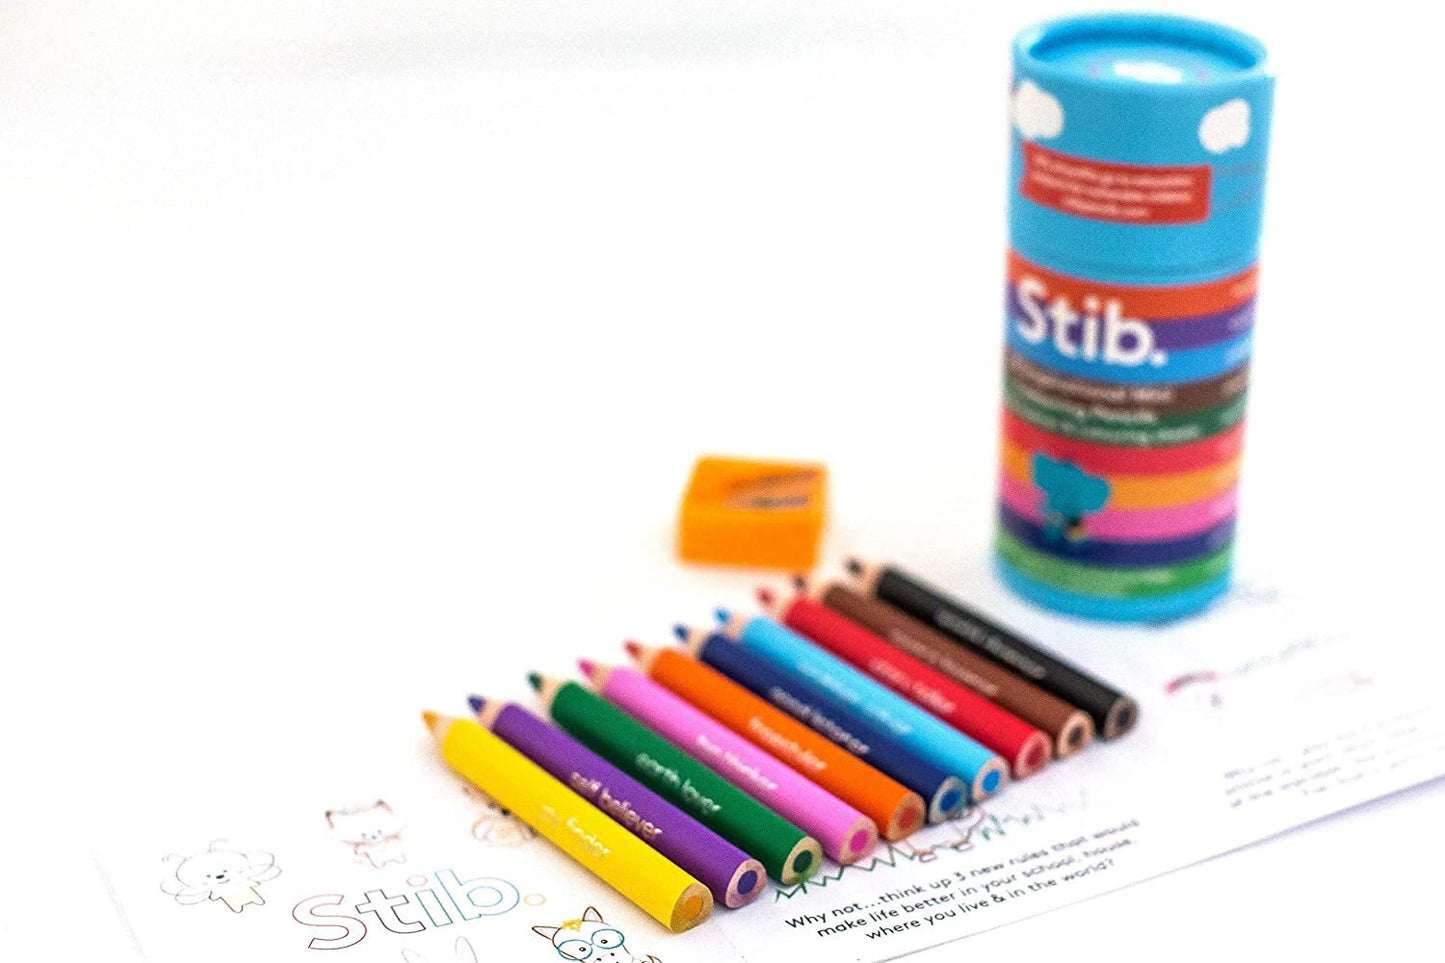 Stib 10 mini colouring pencils